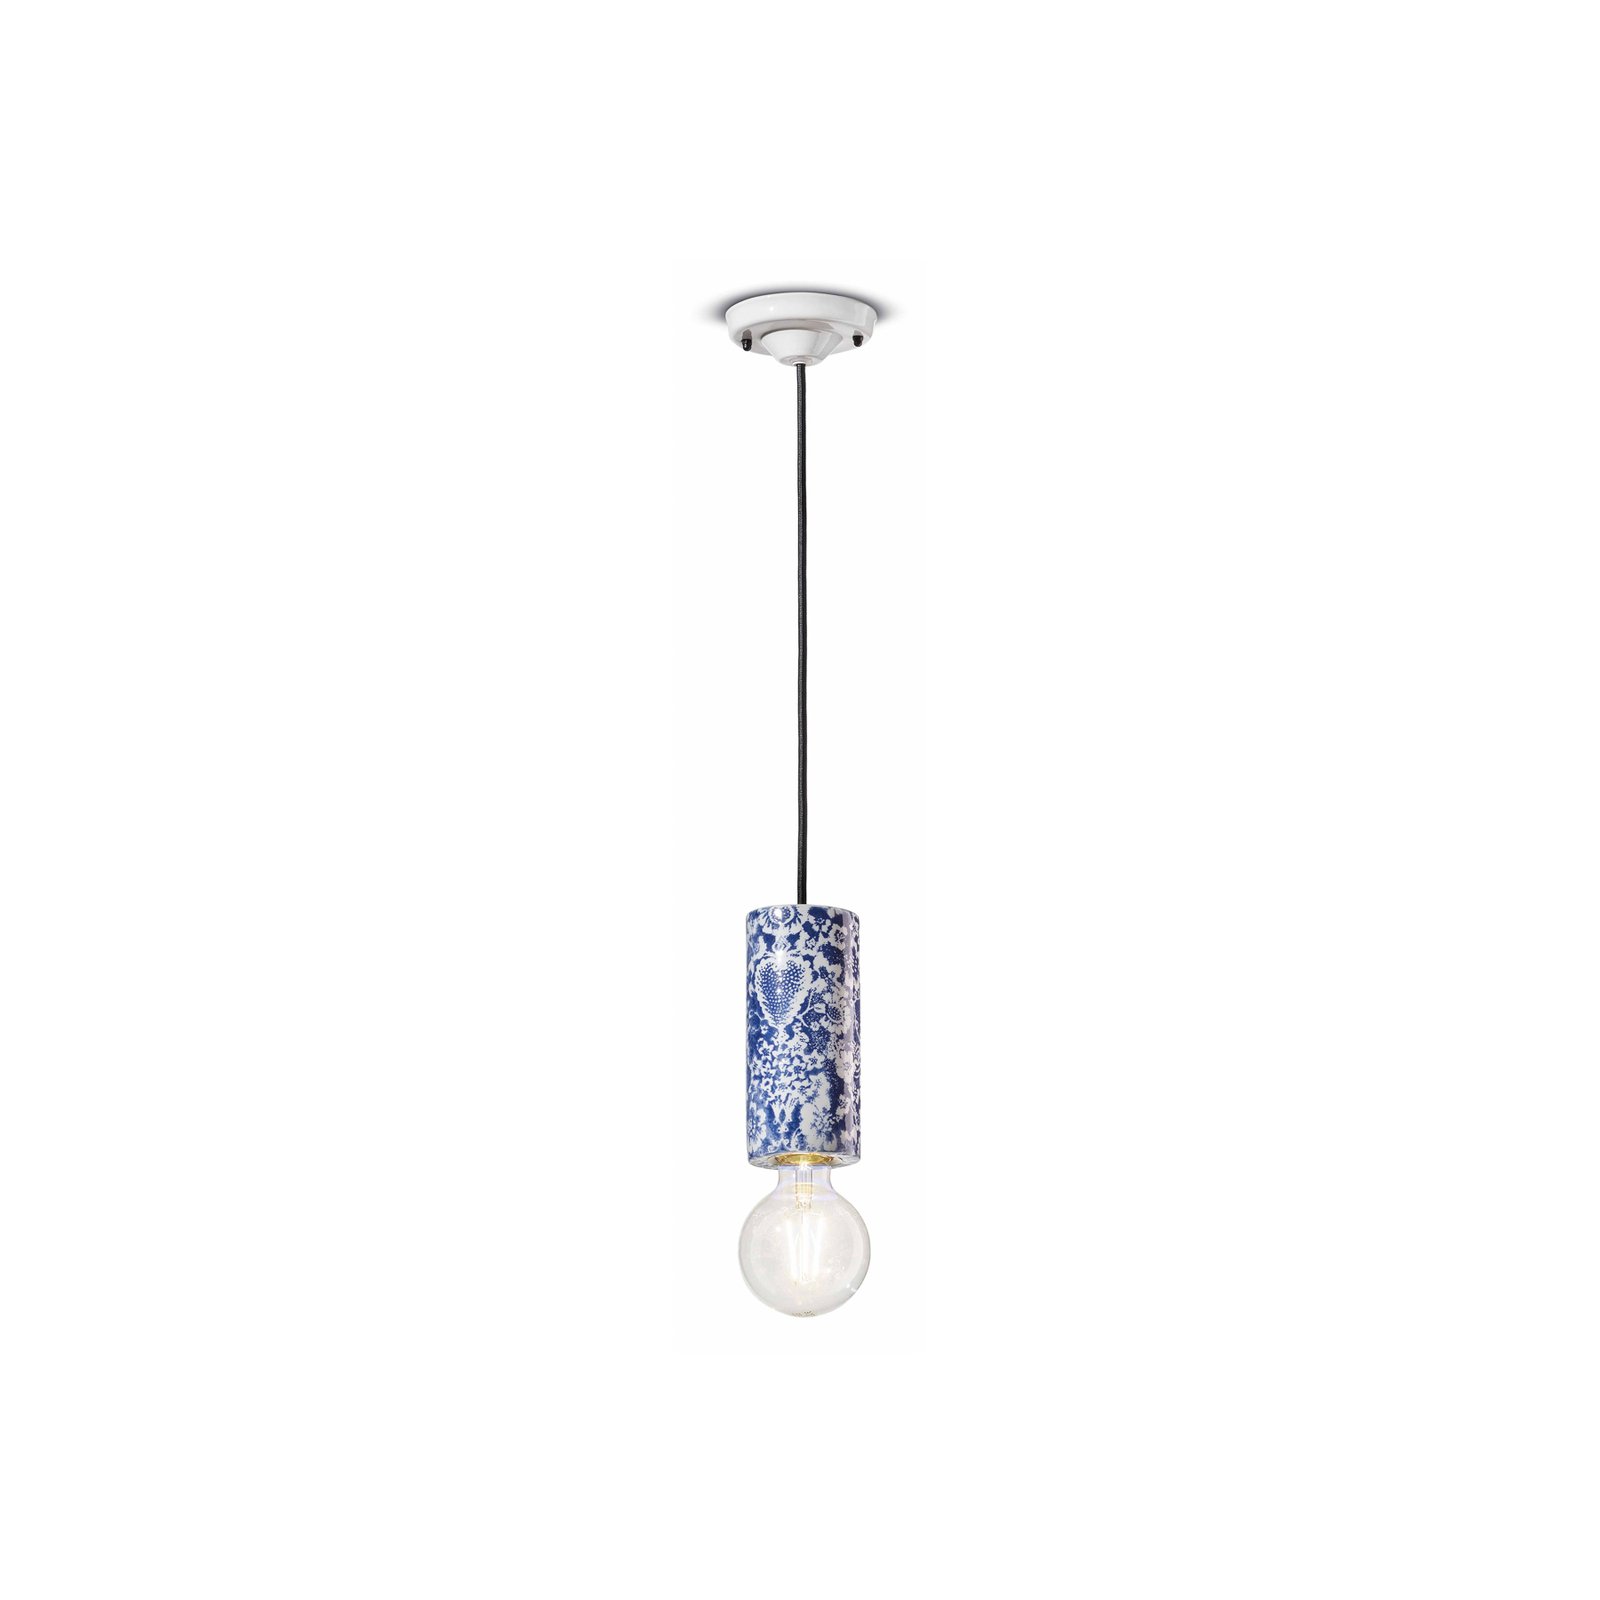 PI závesná lampa, kvetinový vzor Ø 8 cm modrá/biela